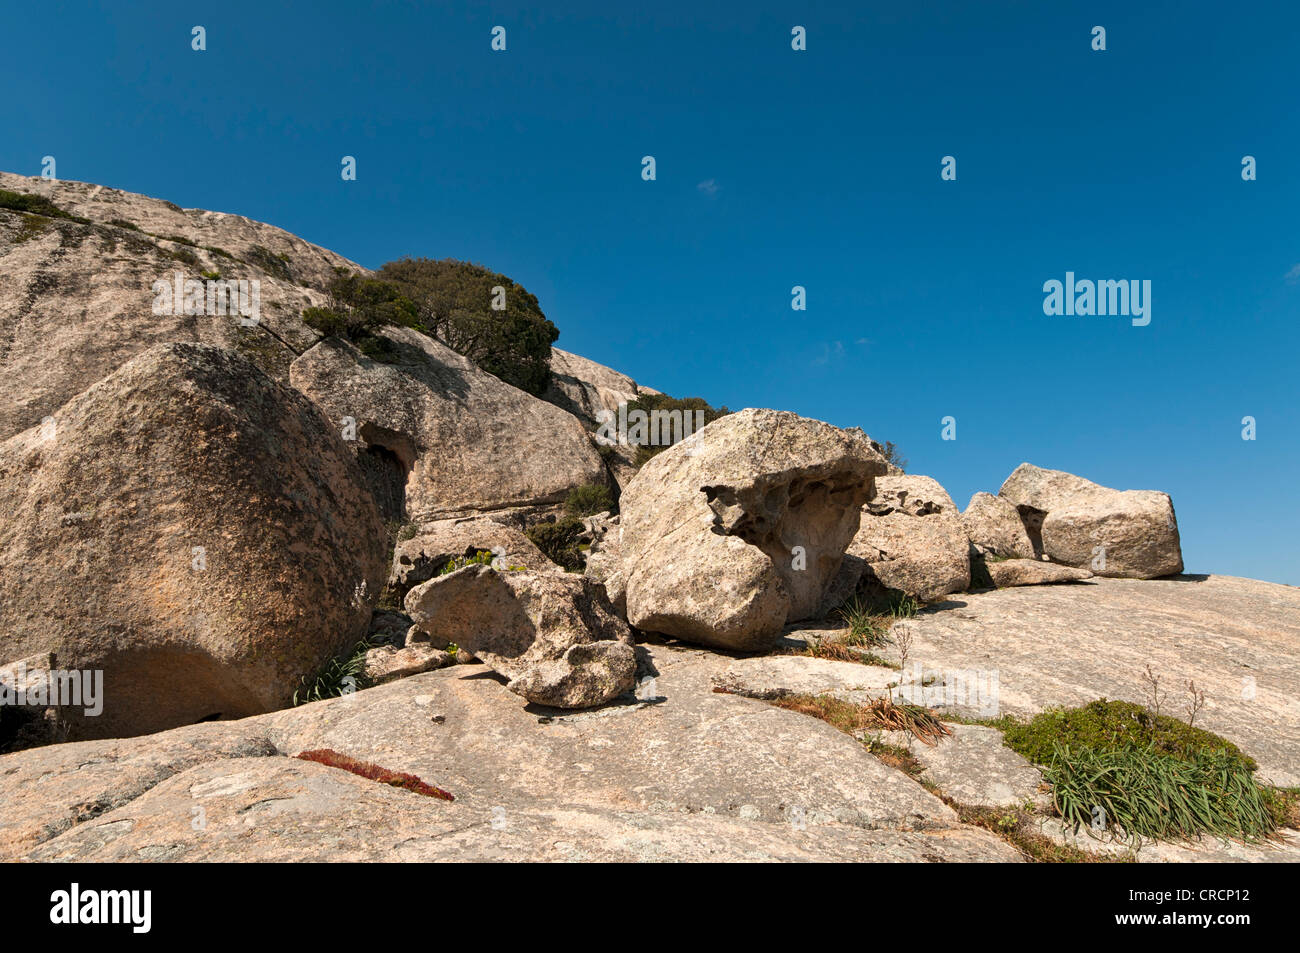 Le formazioni rocciose nelle montagne di Aggius, Aggius, Sardegna, Italia, Europa Foto Stock